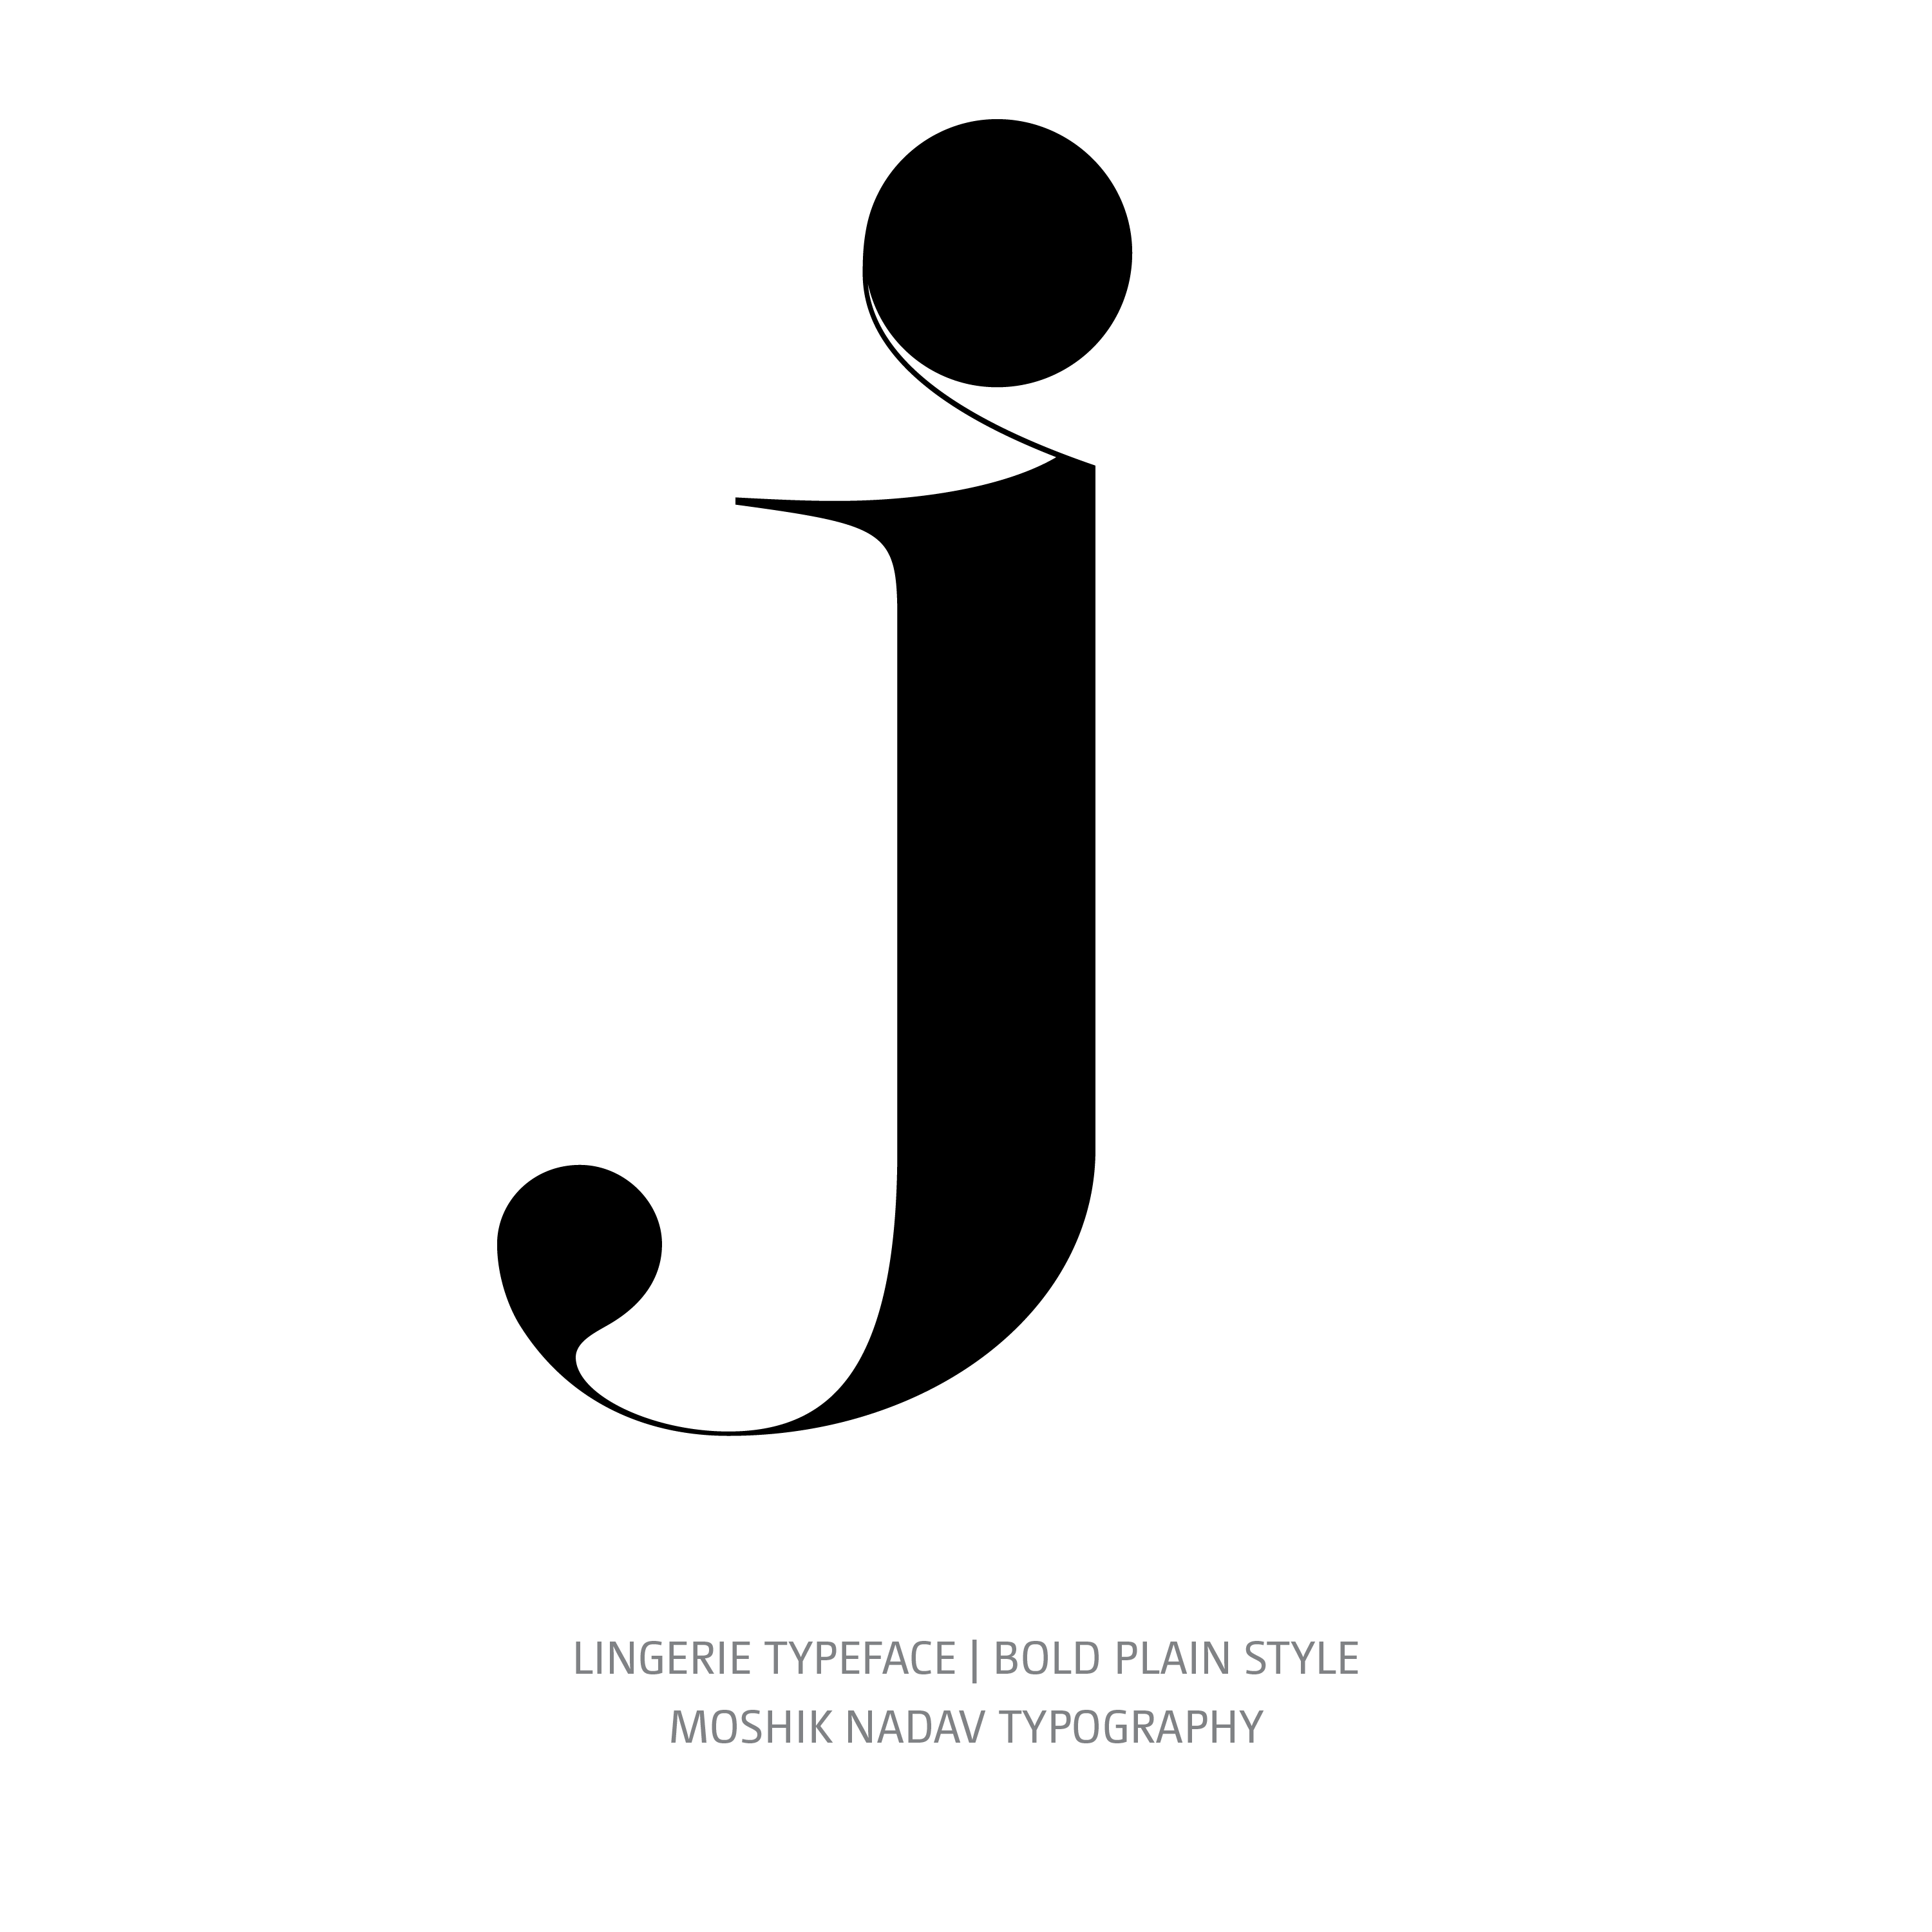 Lingerie Typeface Bold Plain j